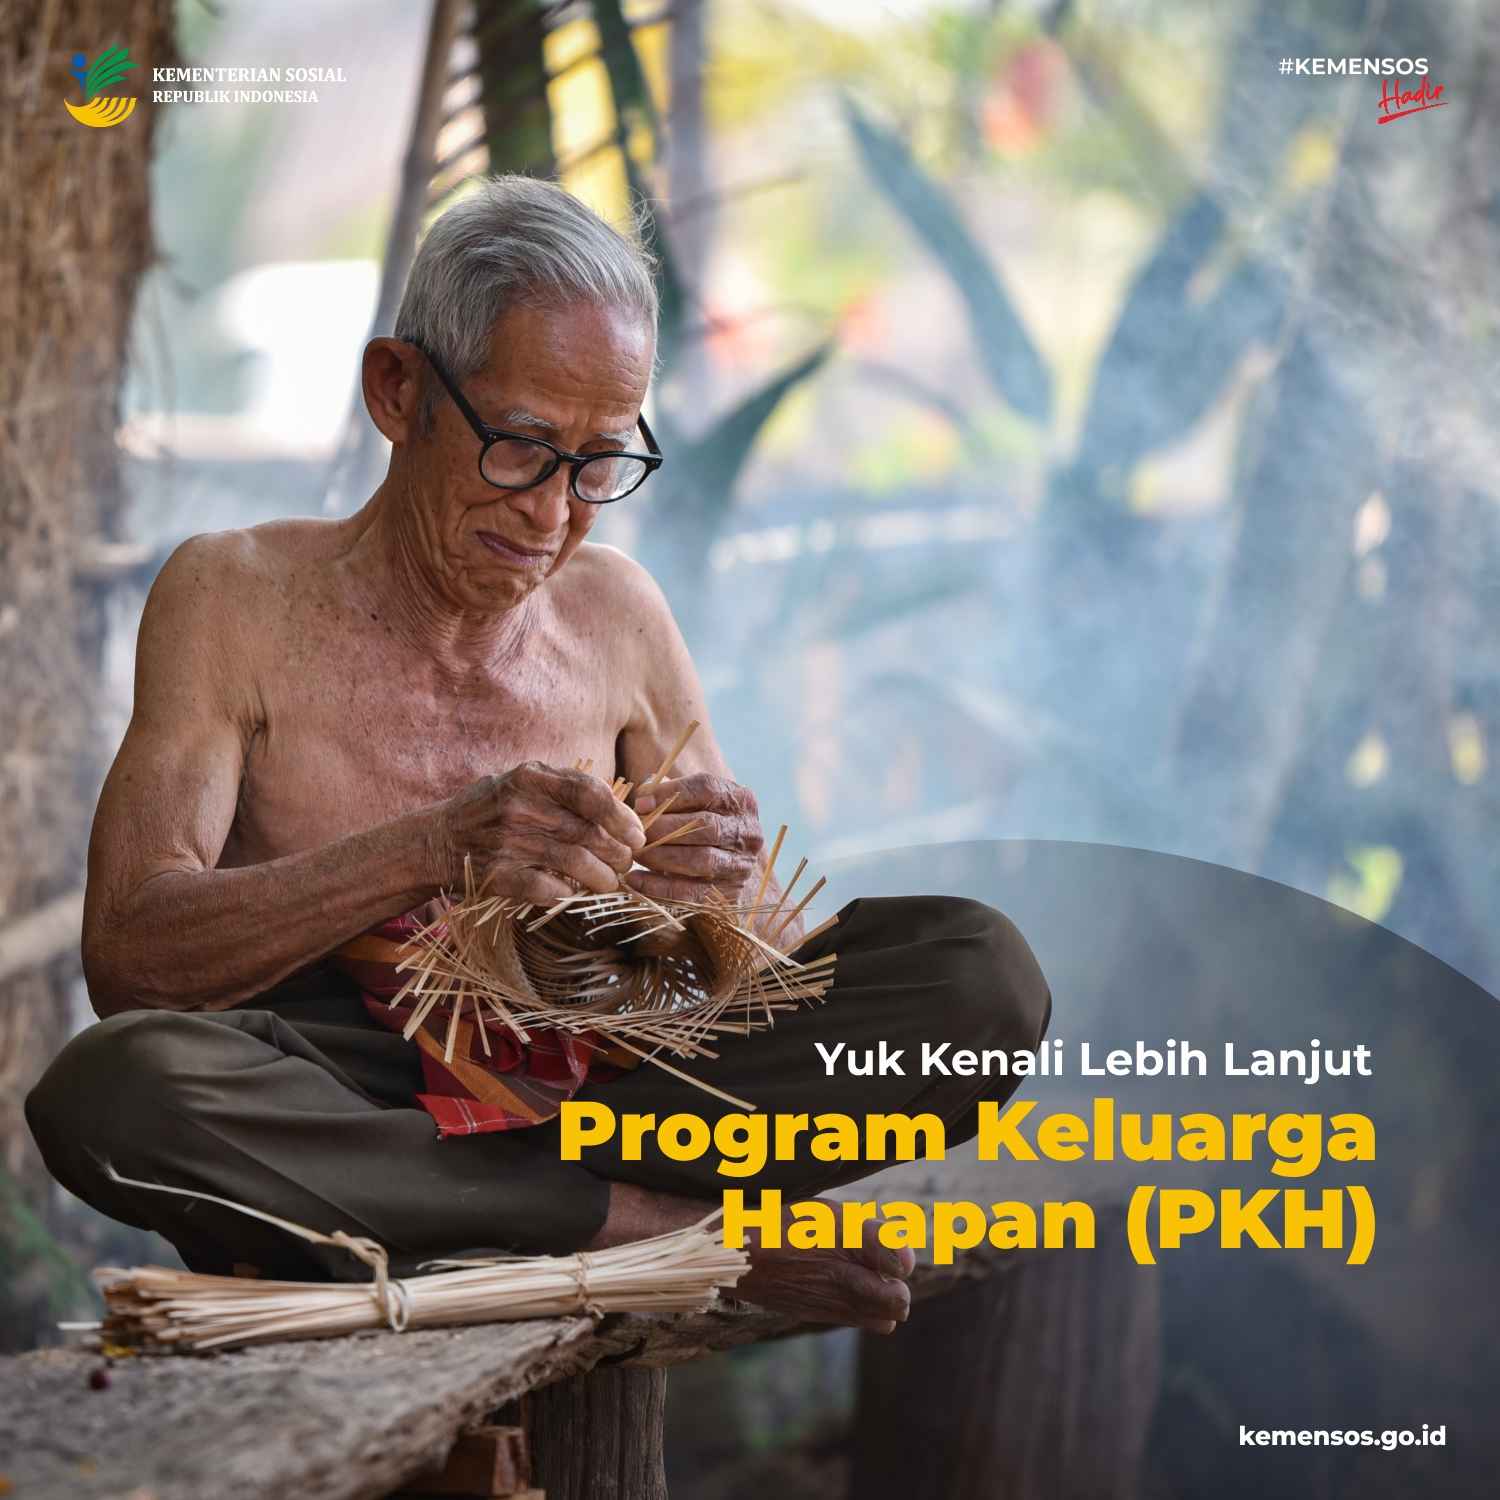 Program Keluarga Harapan (PKH) merupakan salah satu program Bantuan Tunai Kementerian Sosial yang telah terbukti berhasil mendorong penurunan angka kemiskinan di Indonesia.